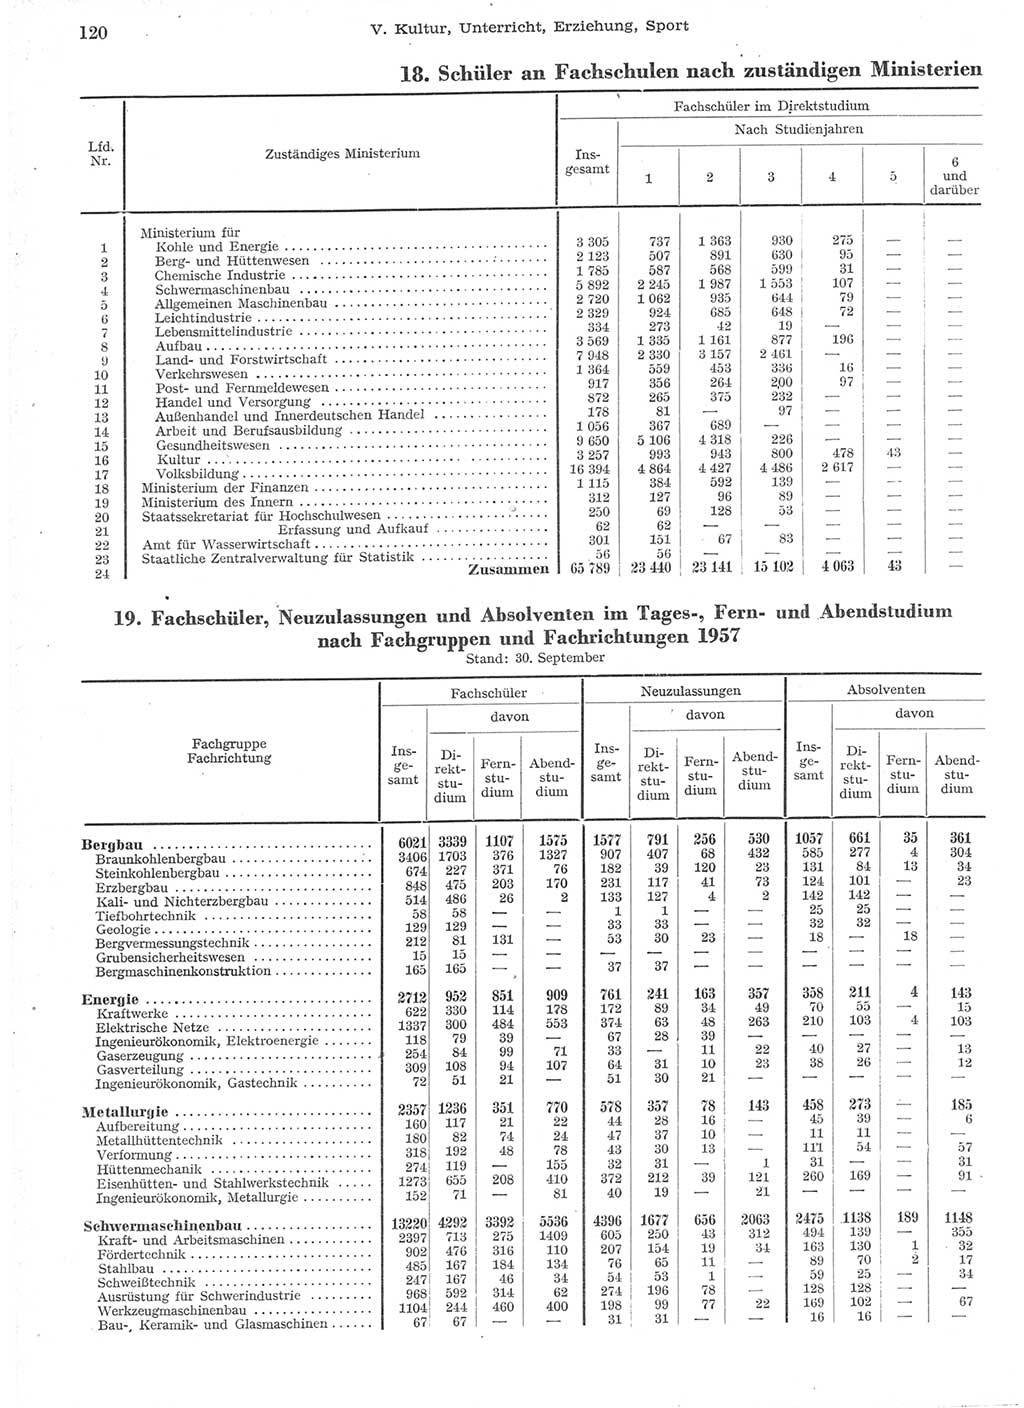 Statistisches Jahrbuch der Deutschen Demokratischen Republik (DDR) 1957, Seite 120 (Stat. Jb. DDR 1957, S. 120)